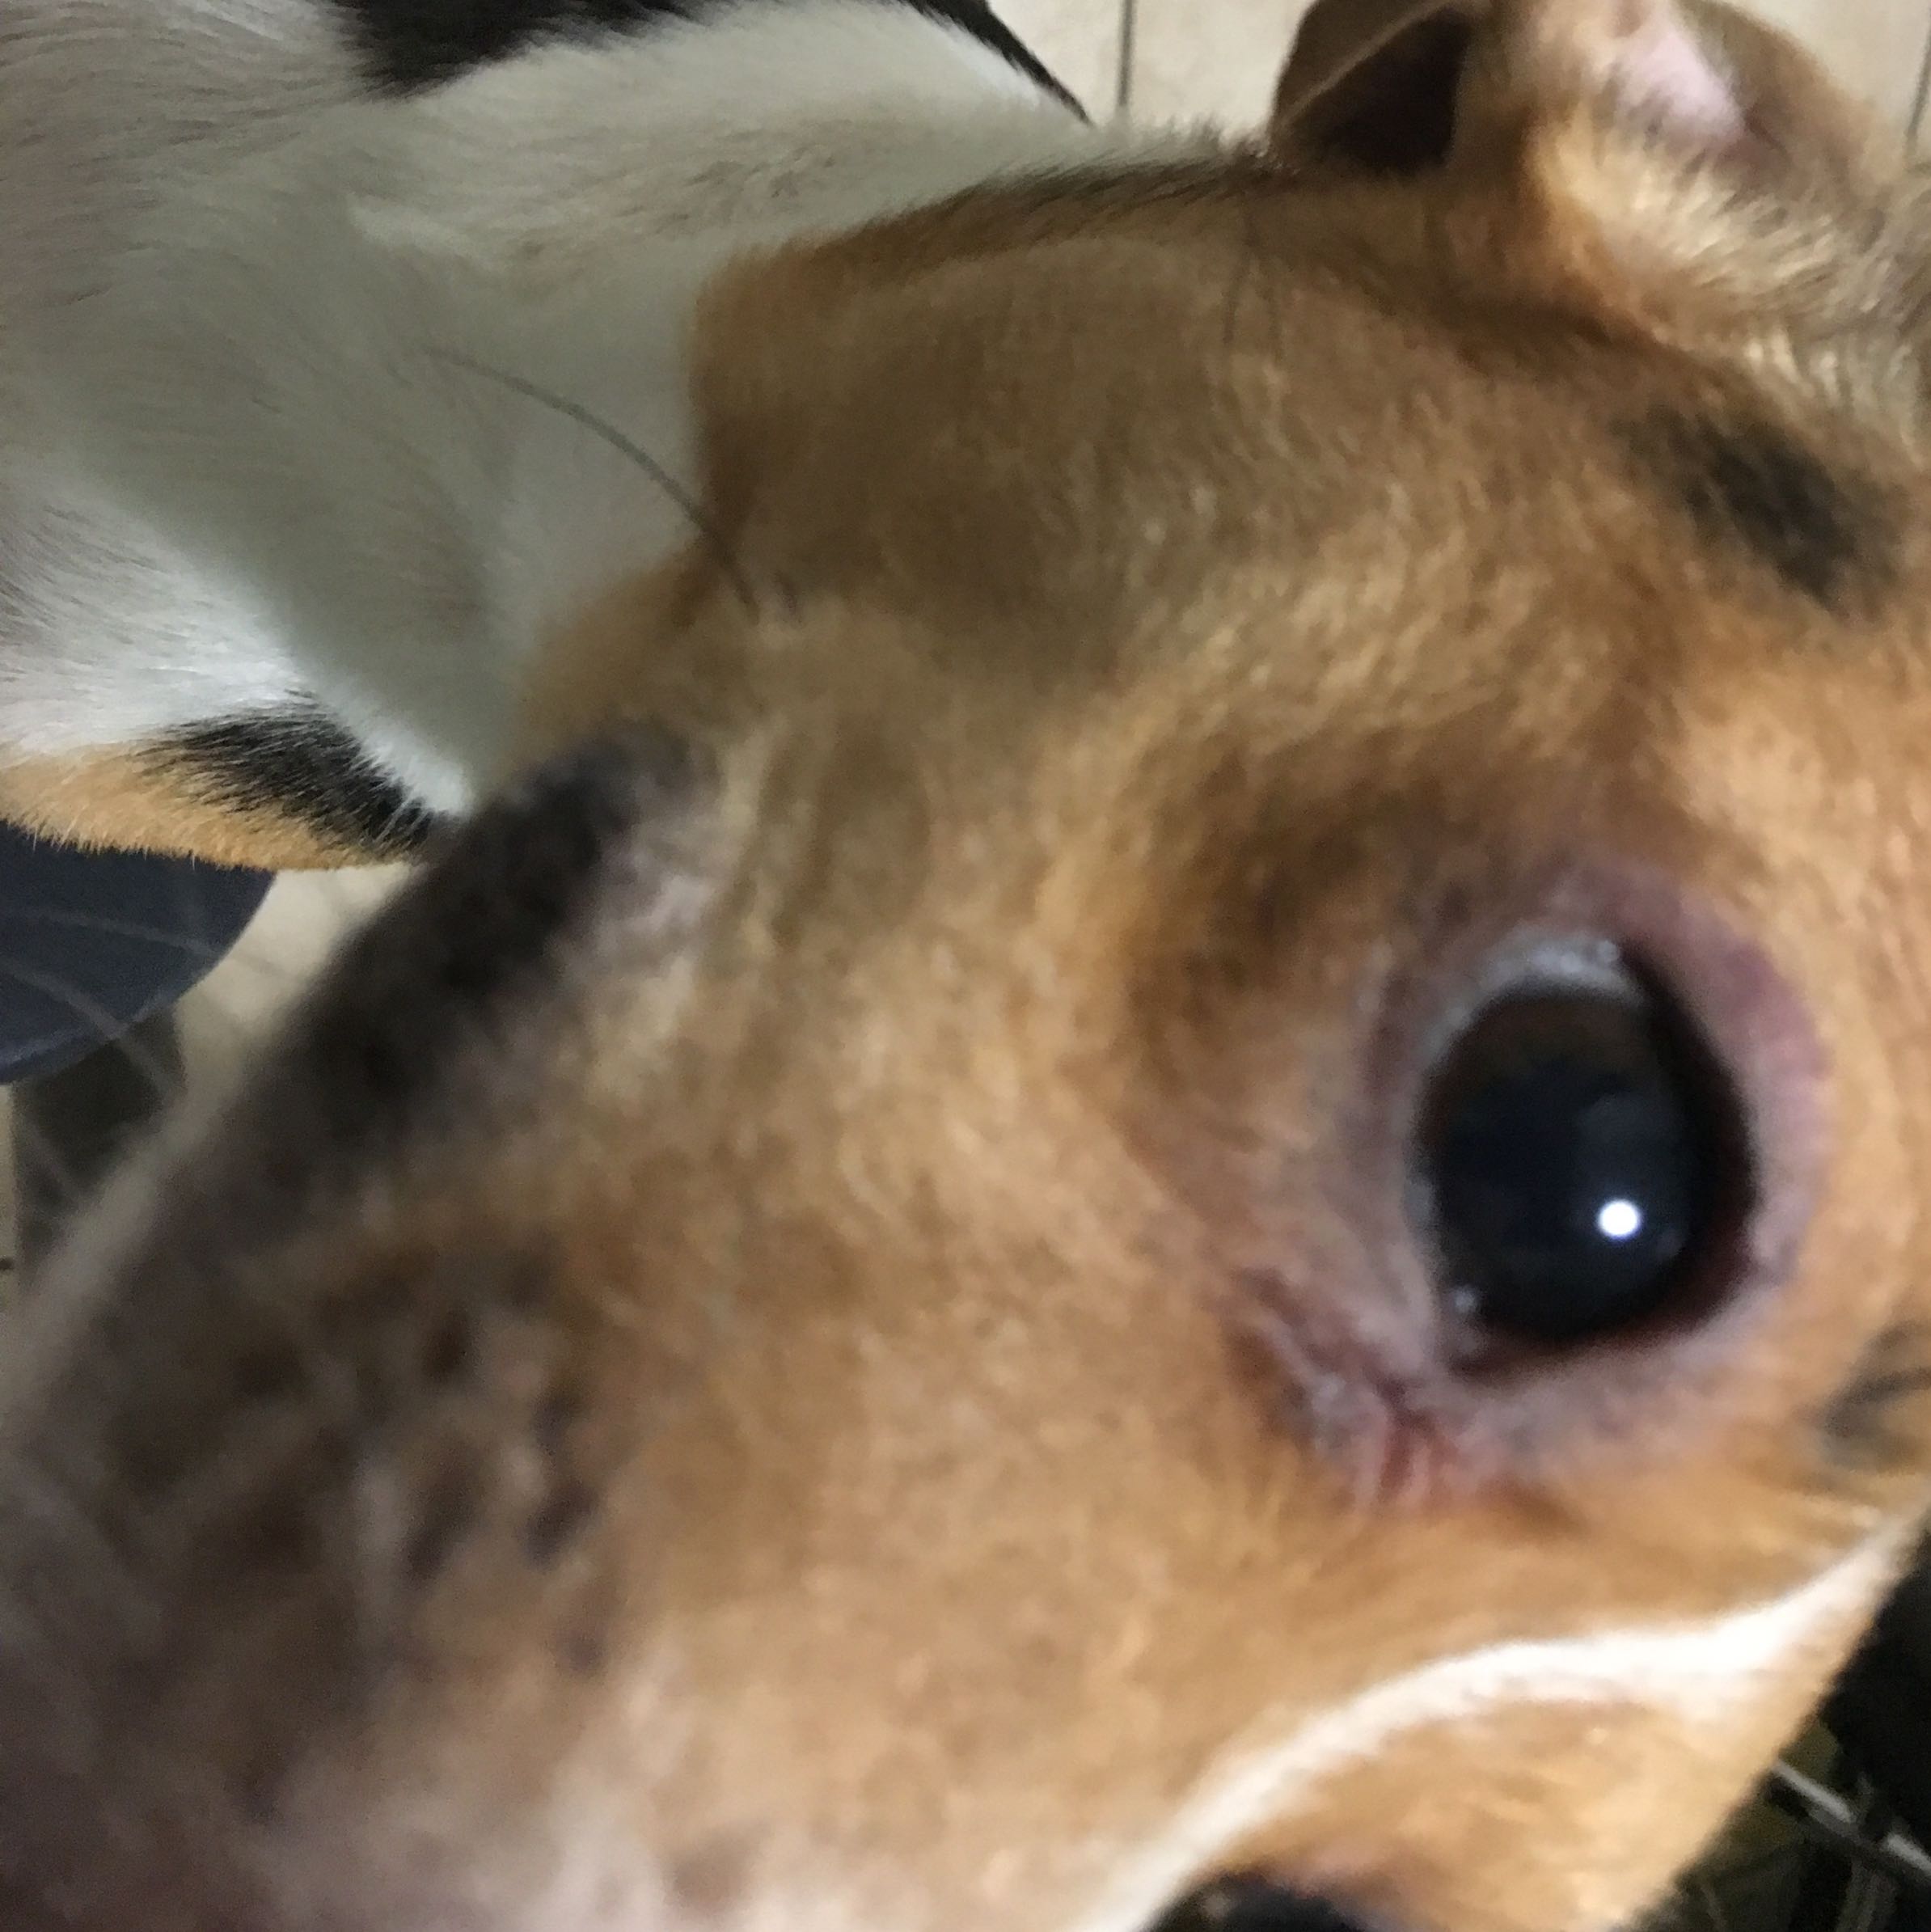 Mein Hund hat um dem Auge alles lila? (Gesundheit, Gesundheit und